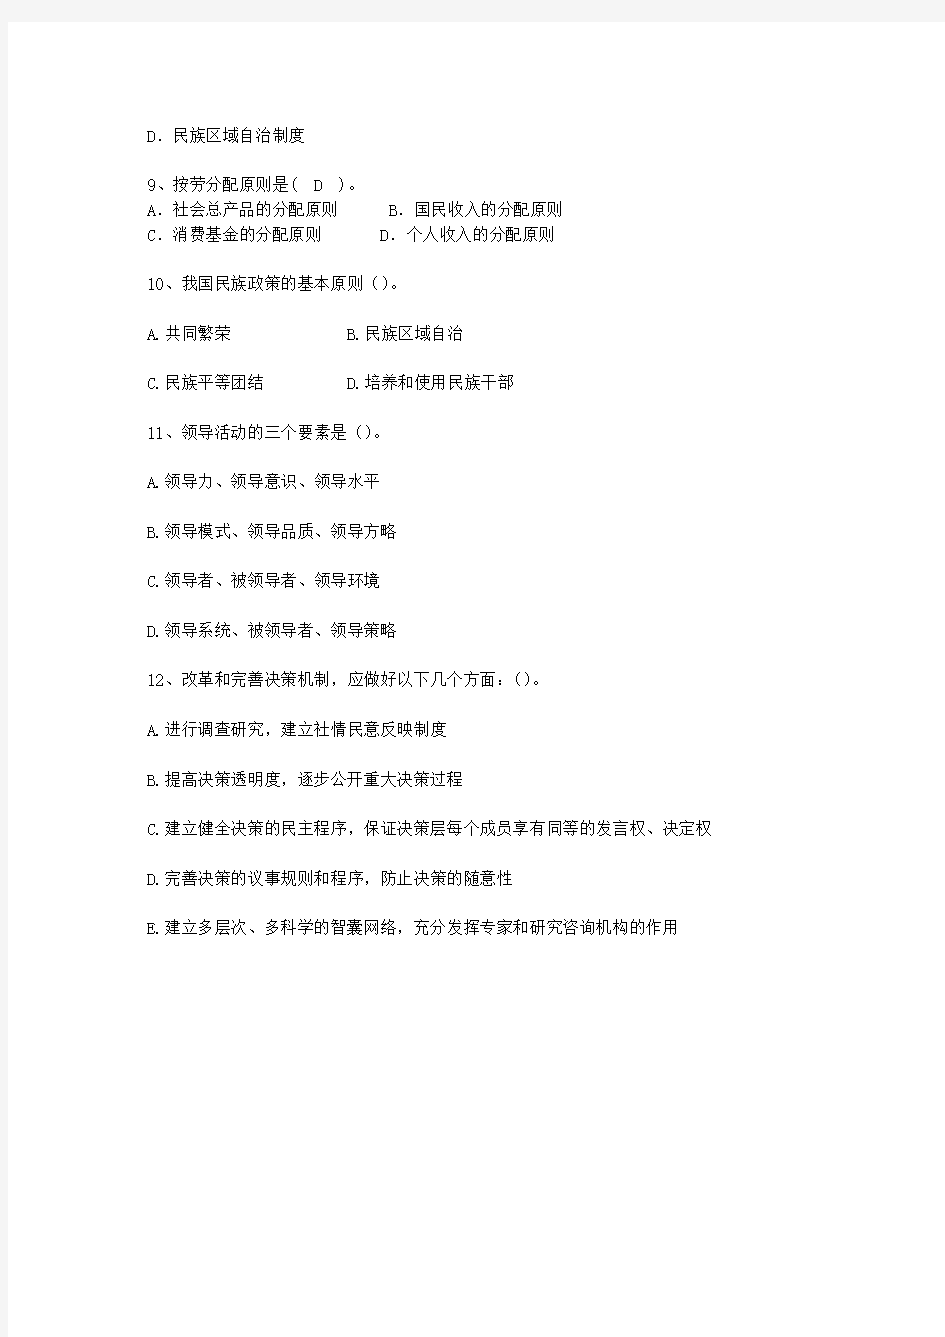 2010青海省公开选拔镇副科级领导干部最新考试试题库(完整版)